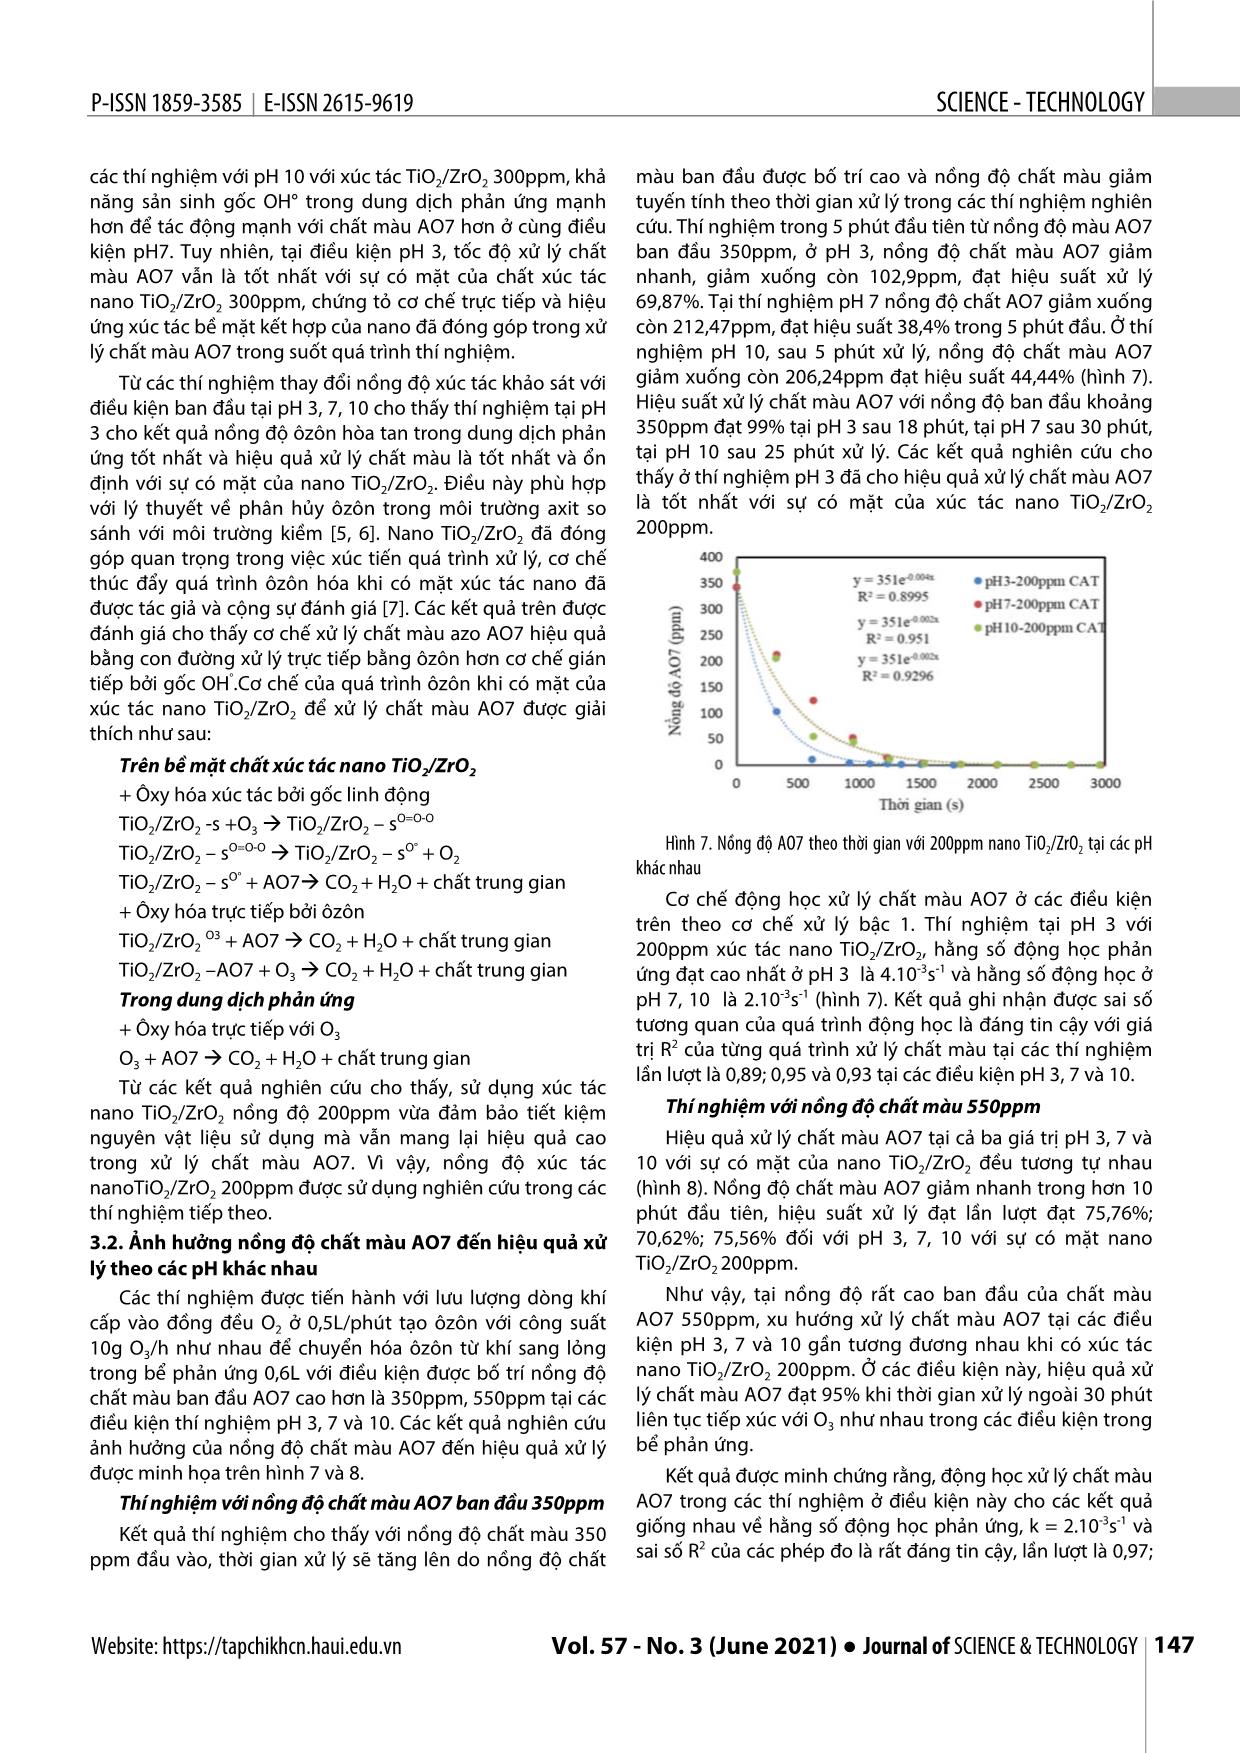 Nghiên cứu sử dụng vật liệu nano tổng hợp TiO₂/ZrO₂ xúc tác quá trình ôxy hóa tiên tiến ôzôn để xử lý axit orange 7 trang 5